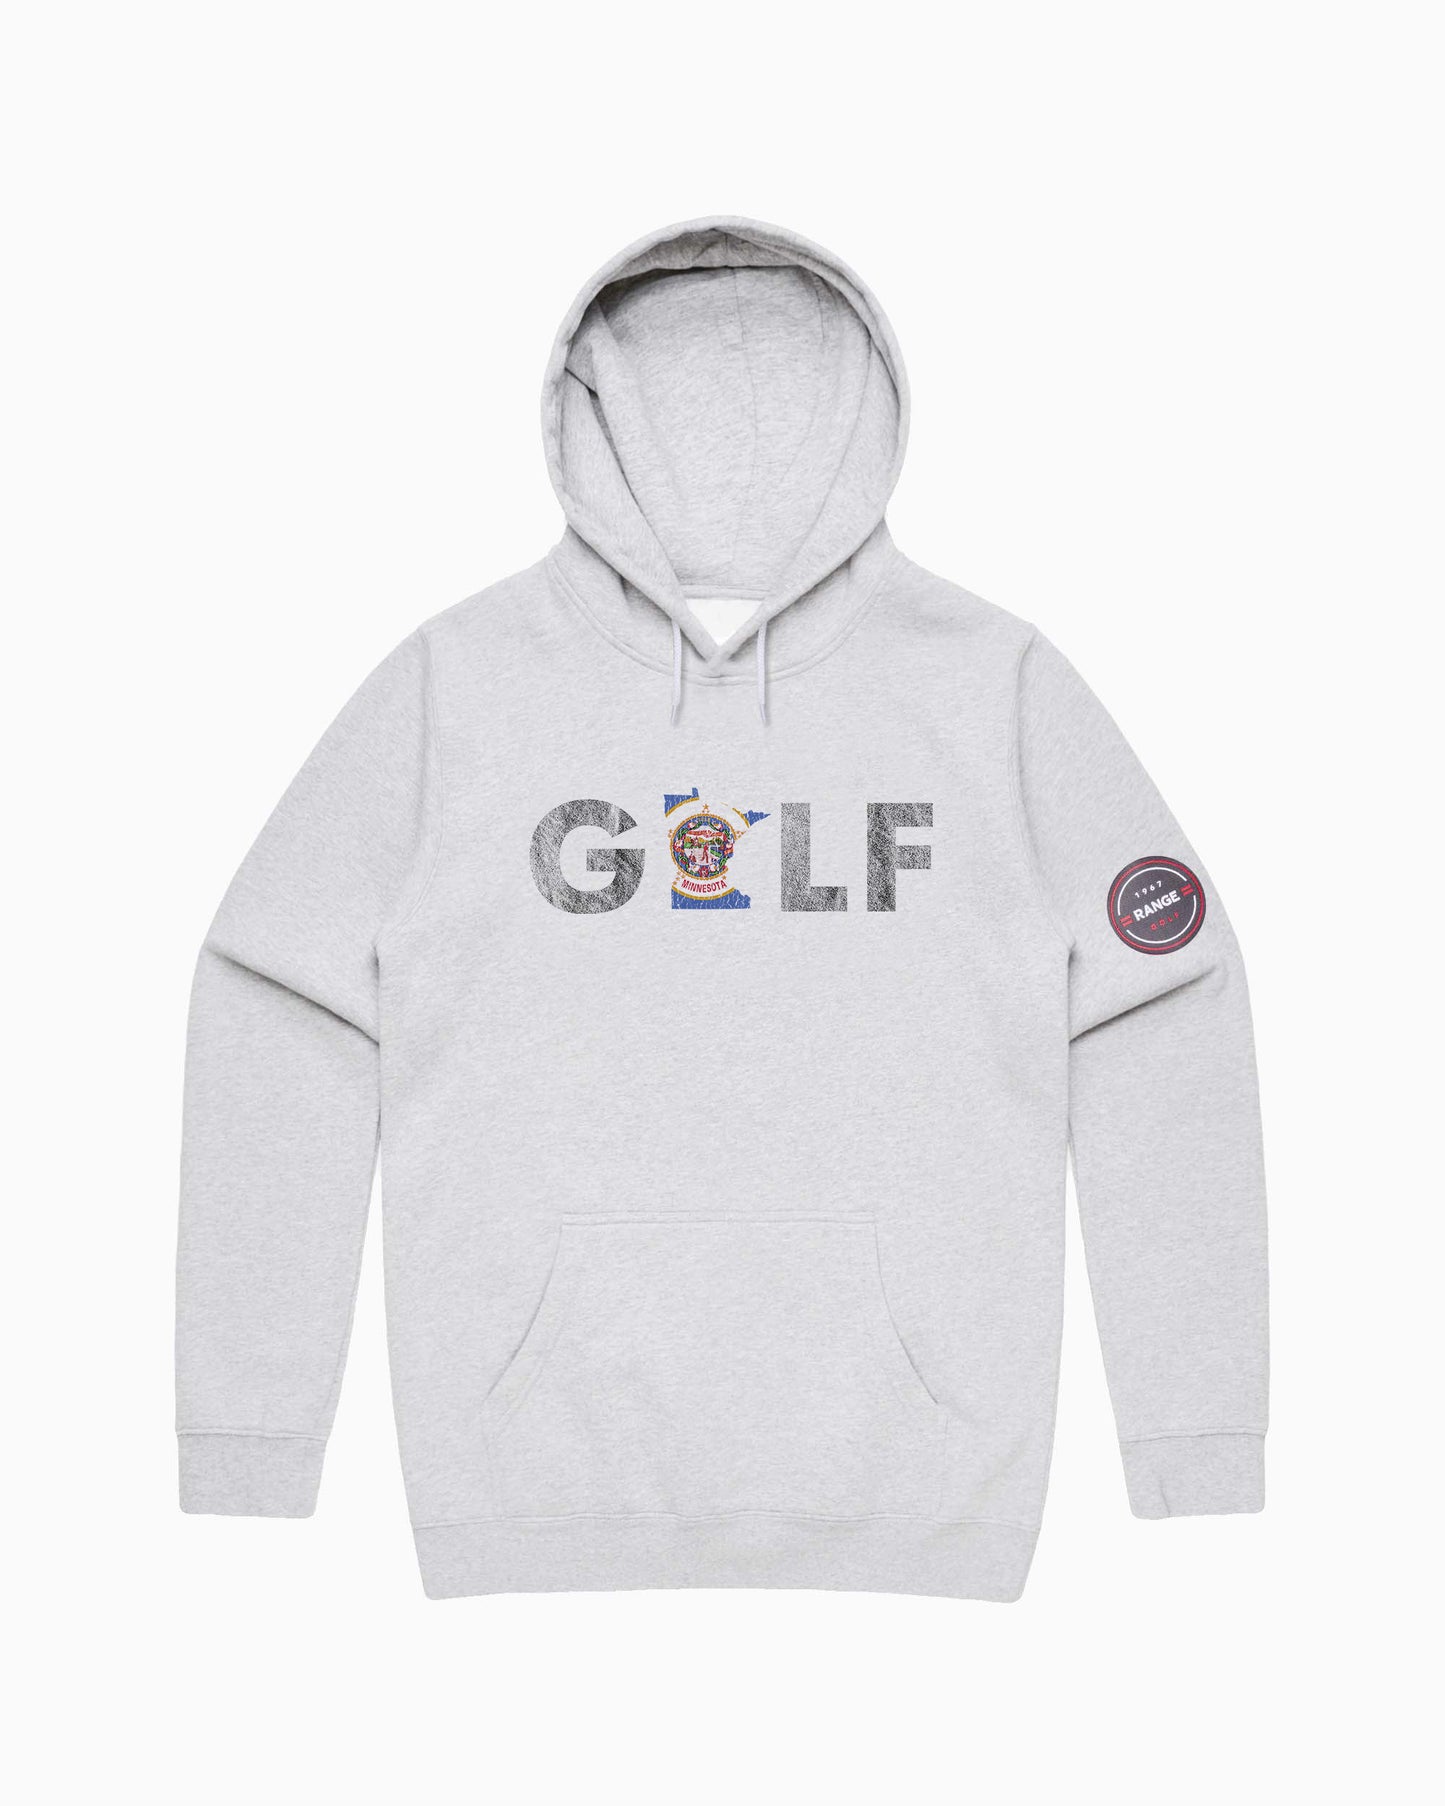 =RANGE= GOLF | Minnesota hoodie